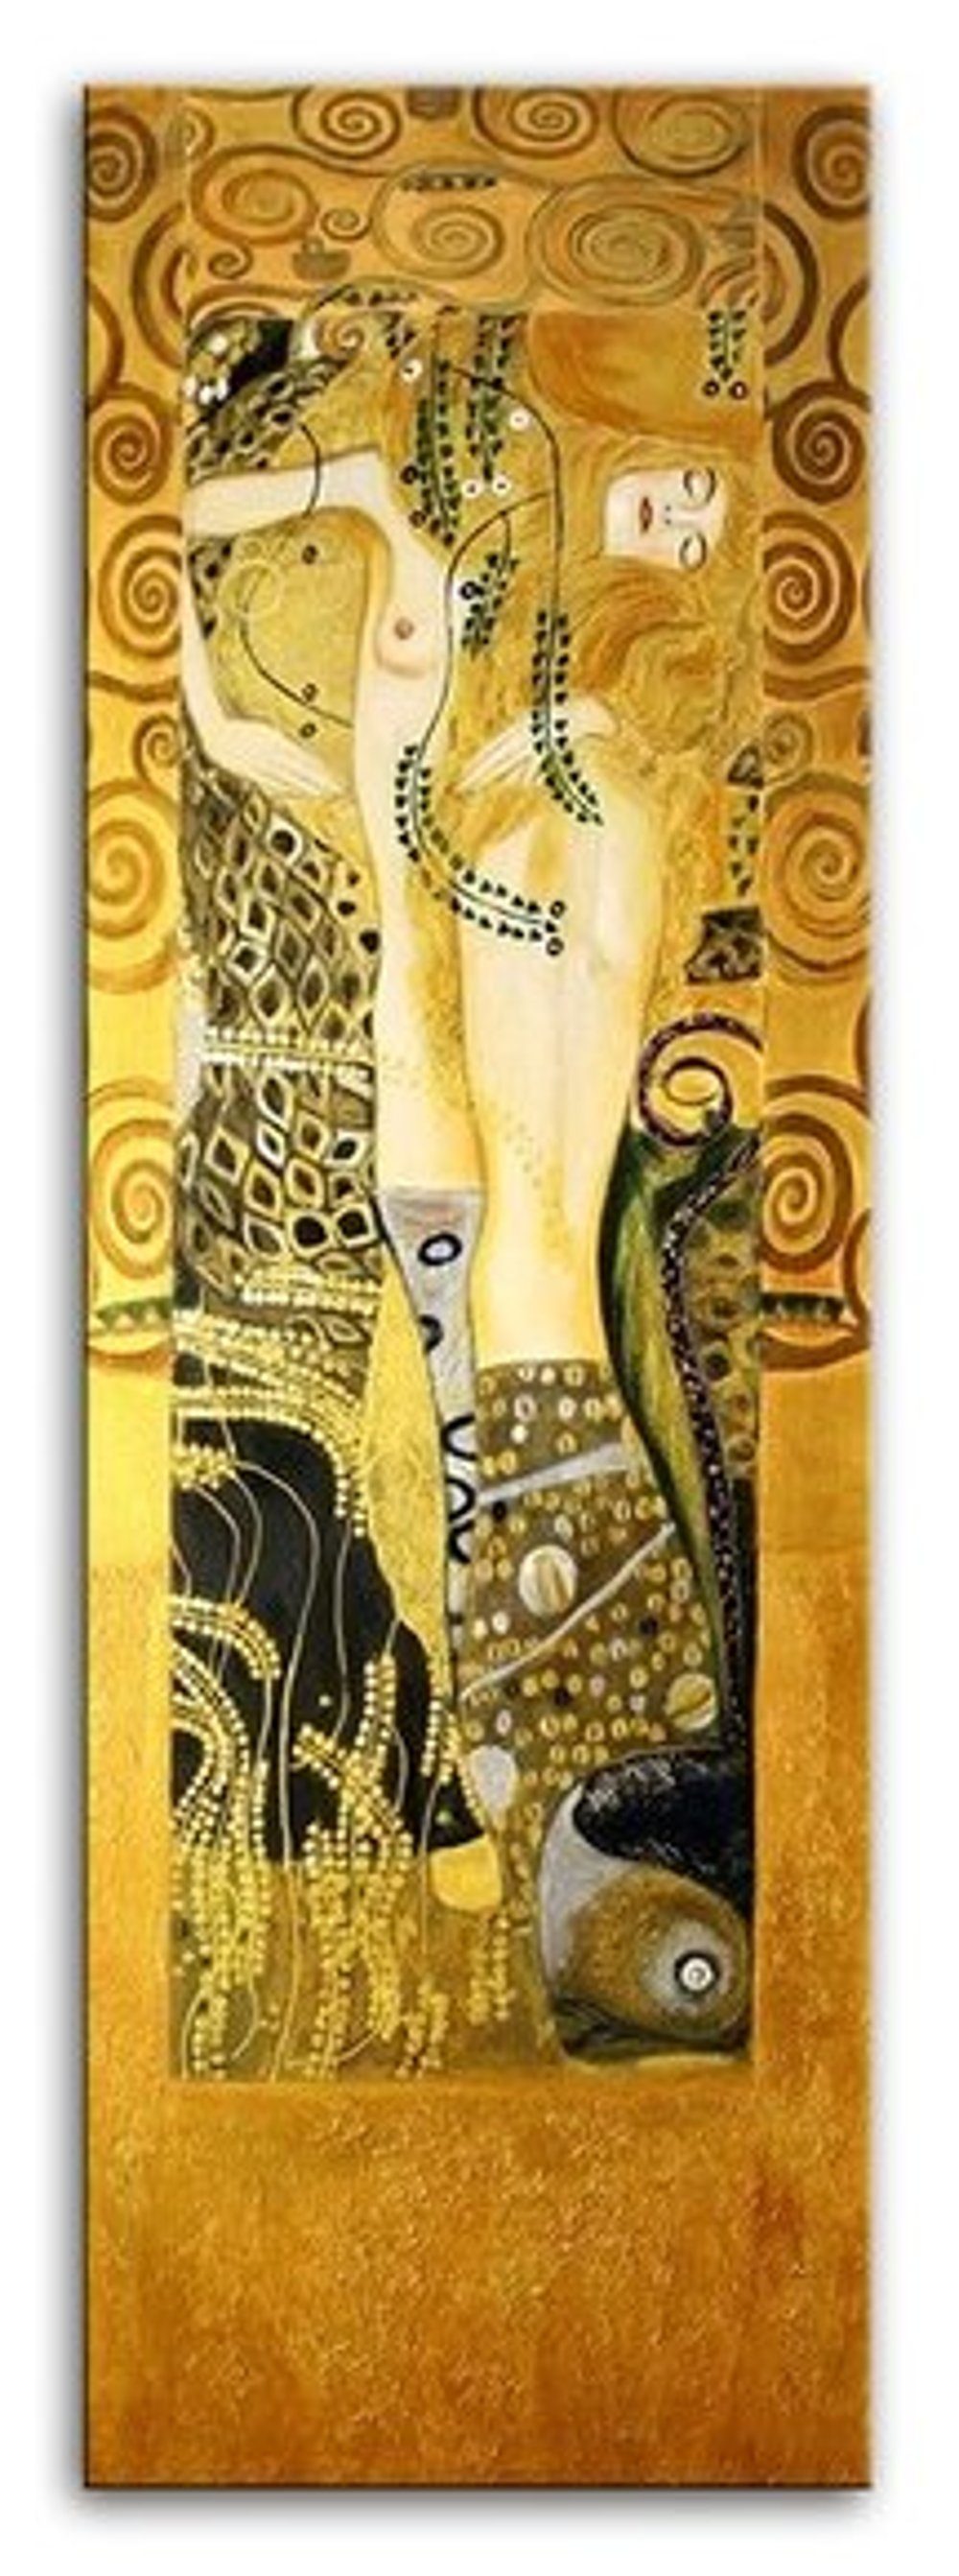 Unikat, »G04855«, handgearbeitet Bild ein Gustav Klimt Gemälde JVmoebel jedes